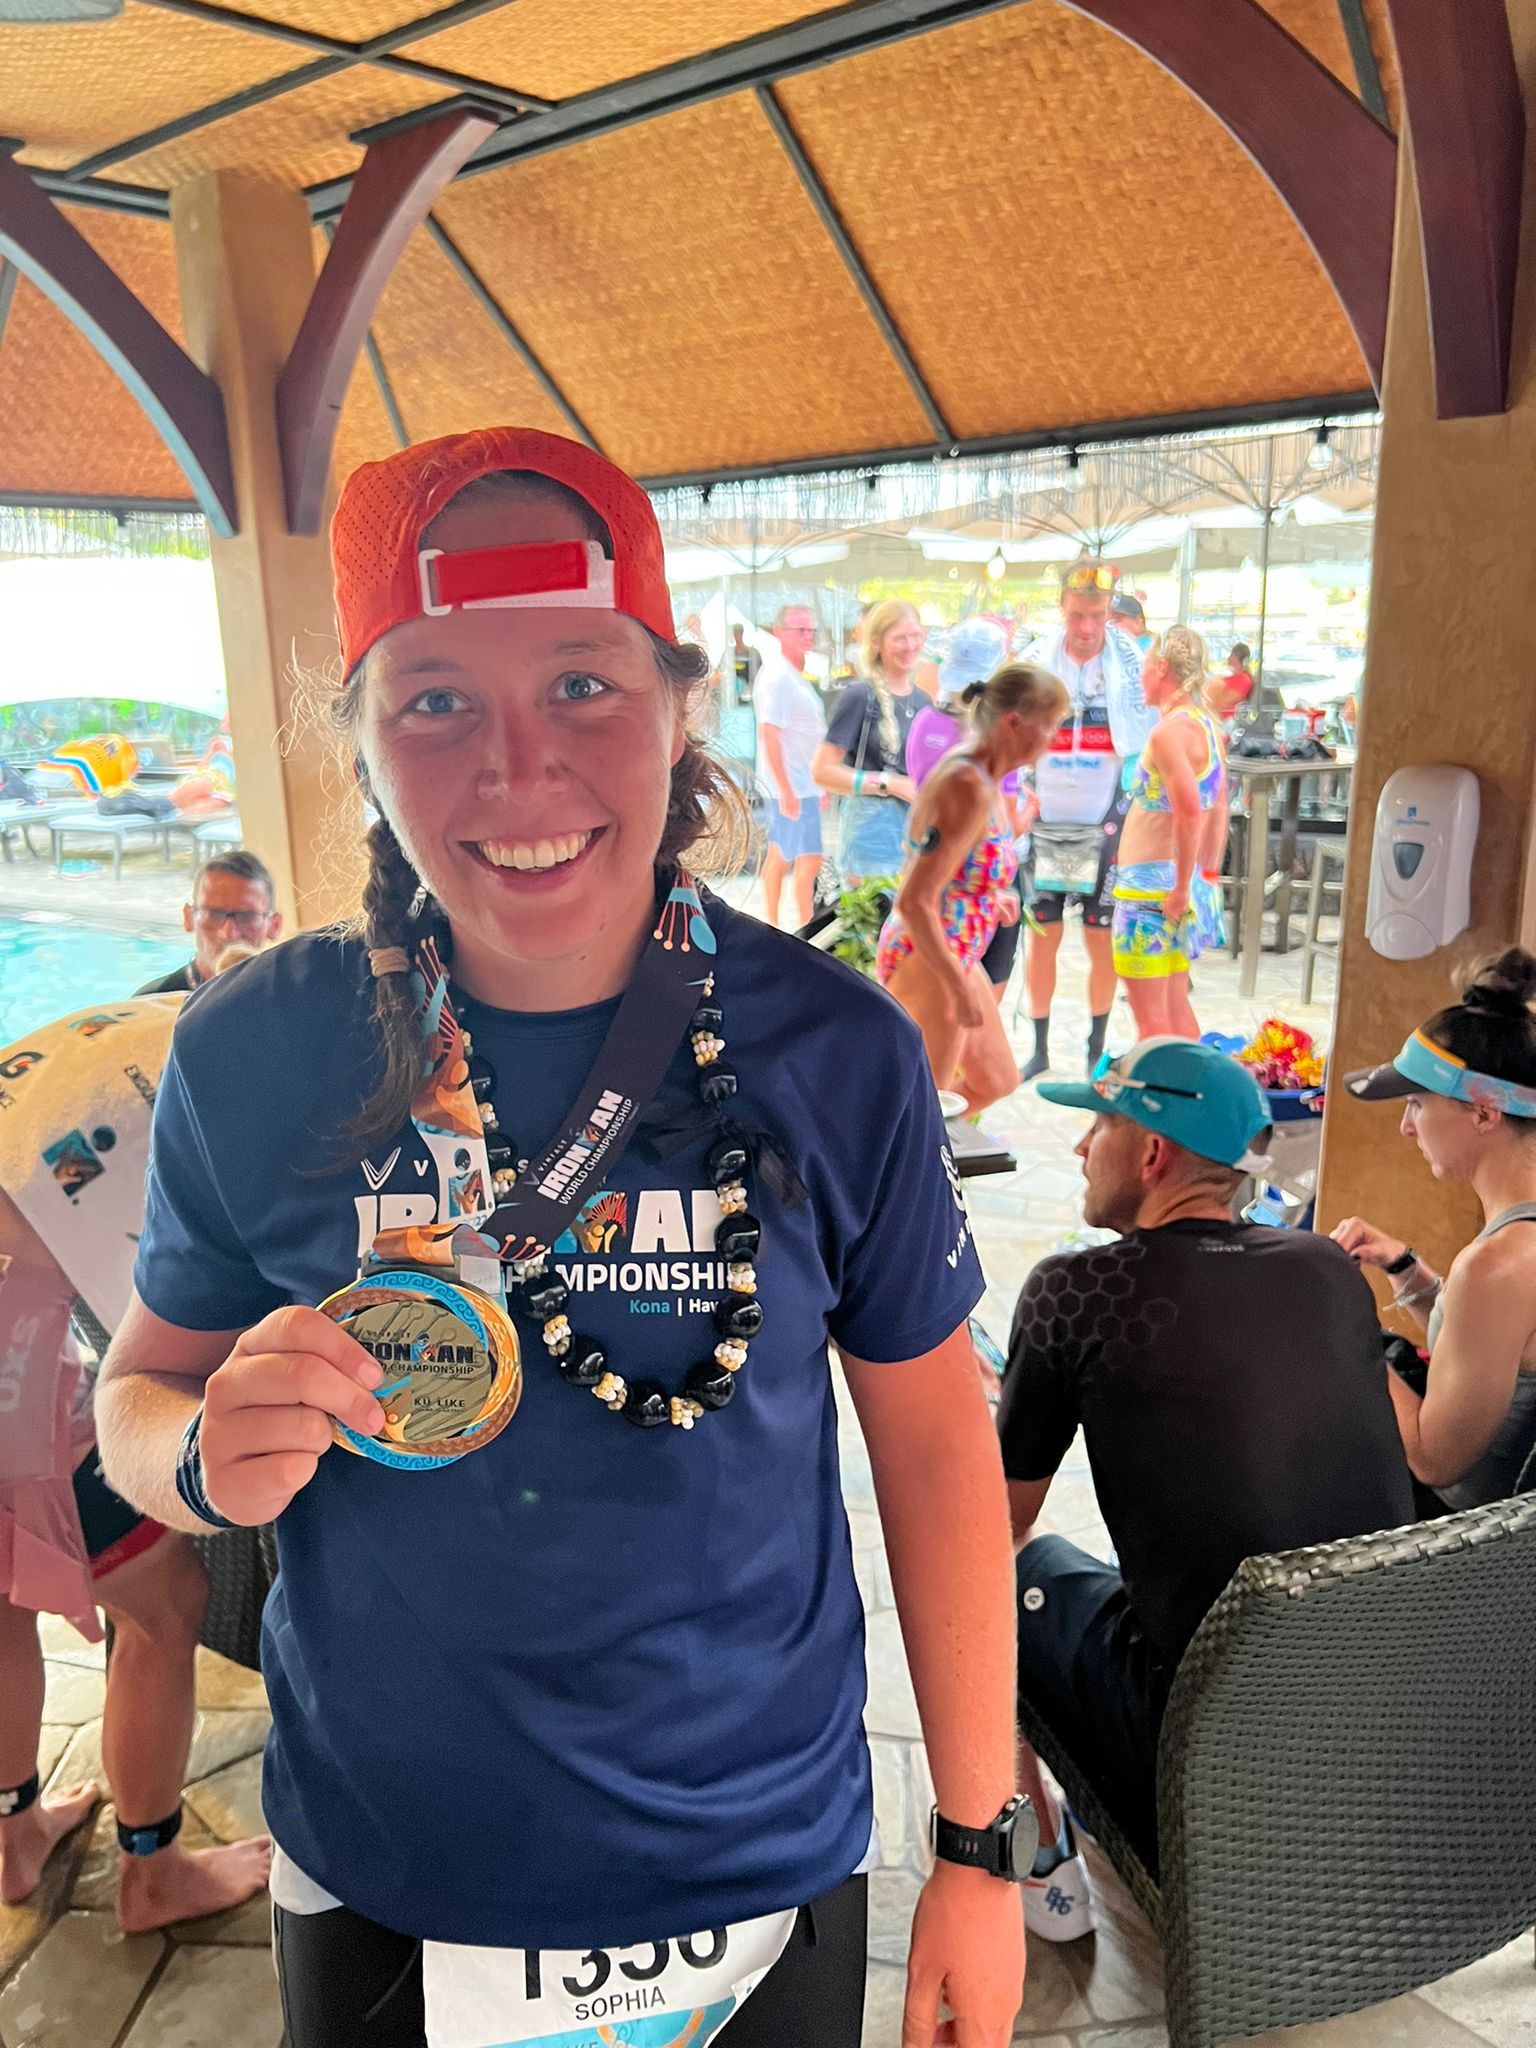 Sophia mit Medaille nach dem Ironman auf Hawaii